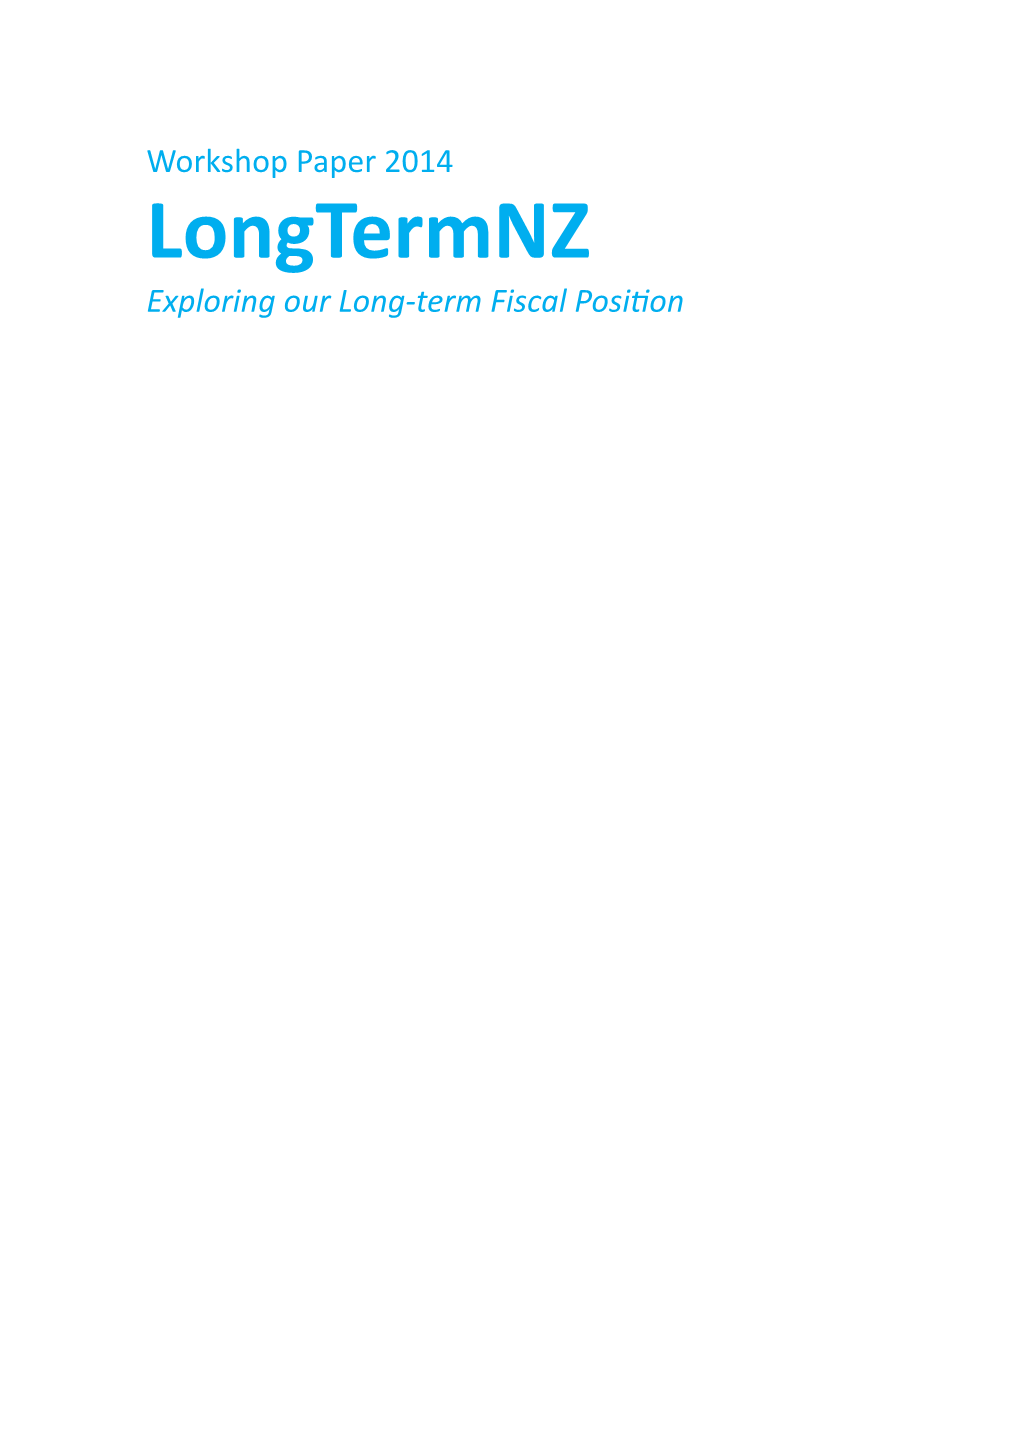 Workshop Paper 2014 Longtermnz Exploring Our Long-Term Fiscal Position Longtermnz: Exploring Our Long-Term Fiscal Position